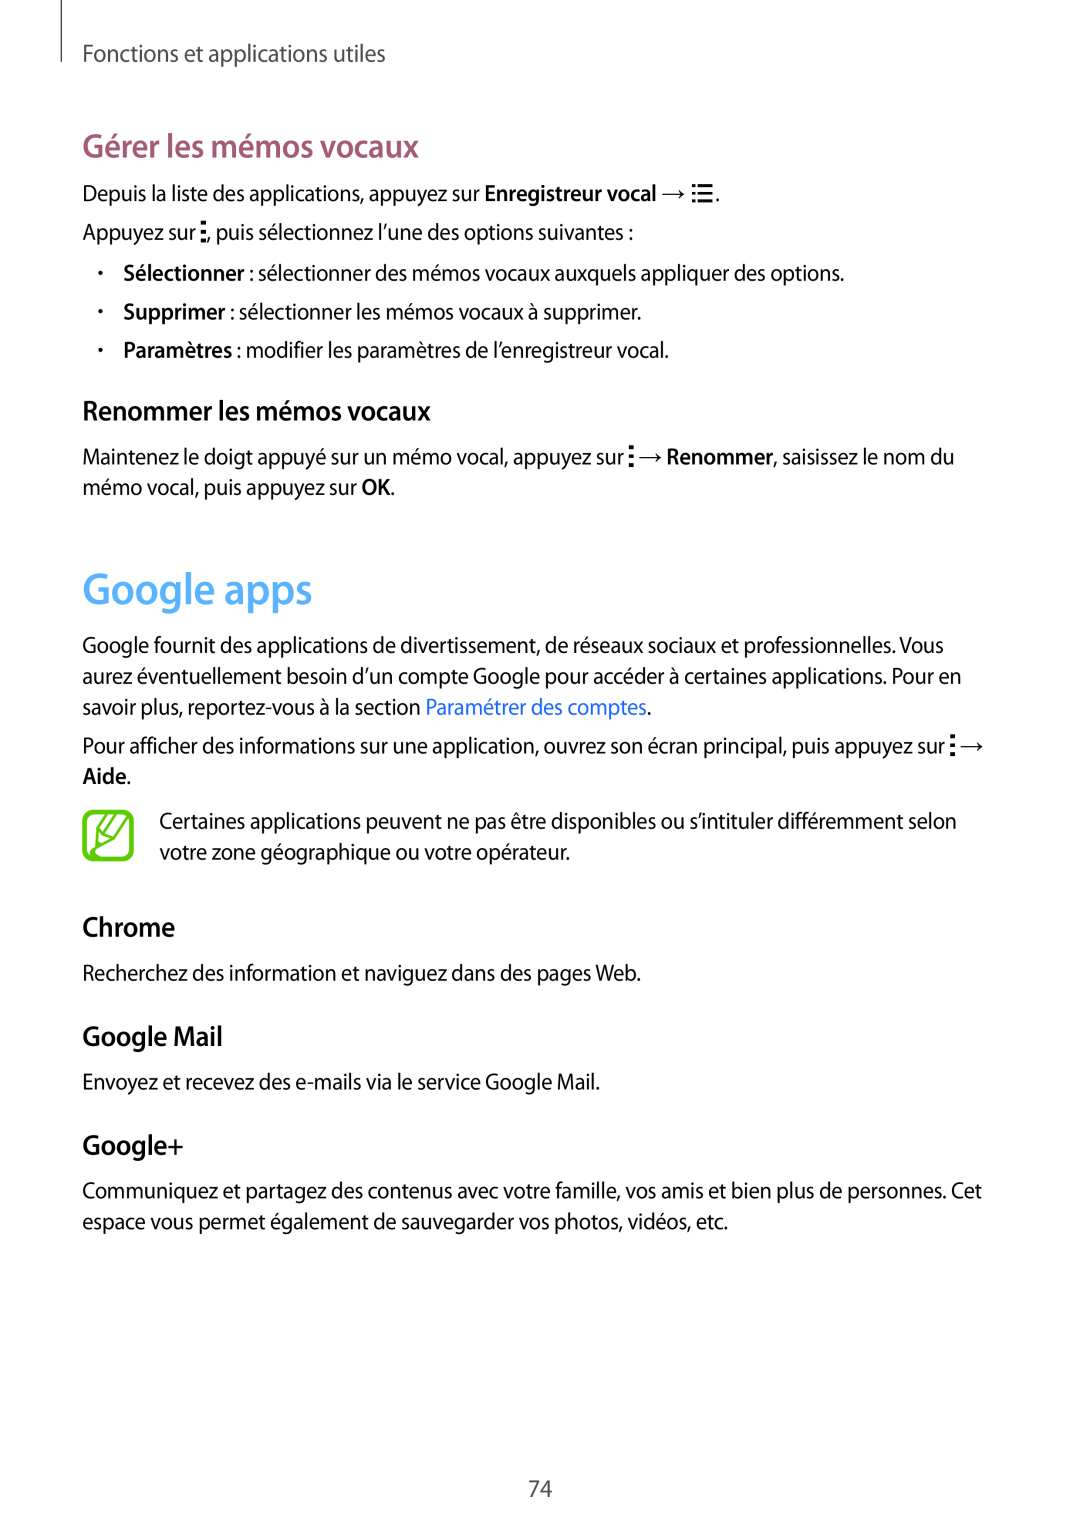 Samsung SM-G130HZWACOR manual Google apps, Gérer les mémos vocaux, Renommer les mémos vocaux, Chrome, Google Mail, Google+ 